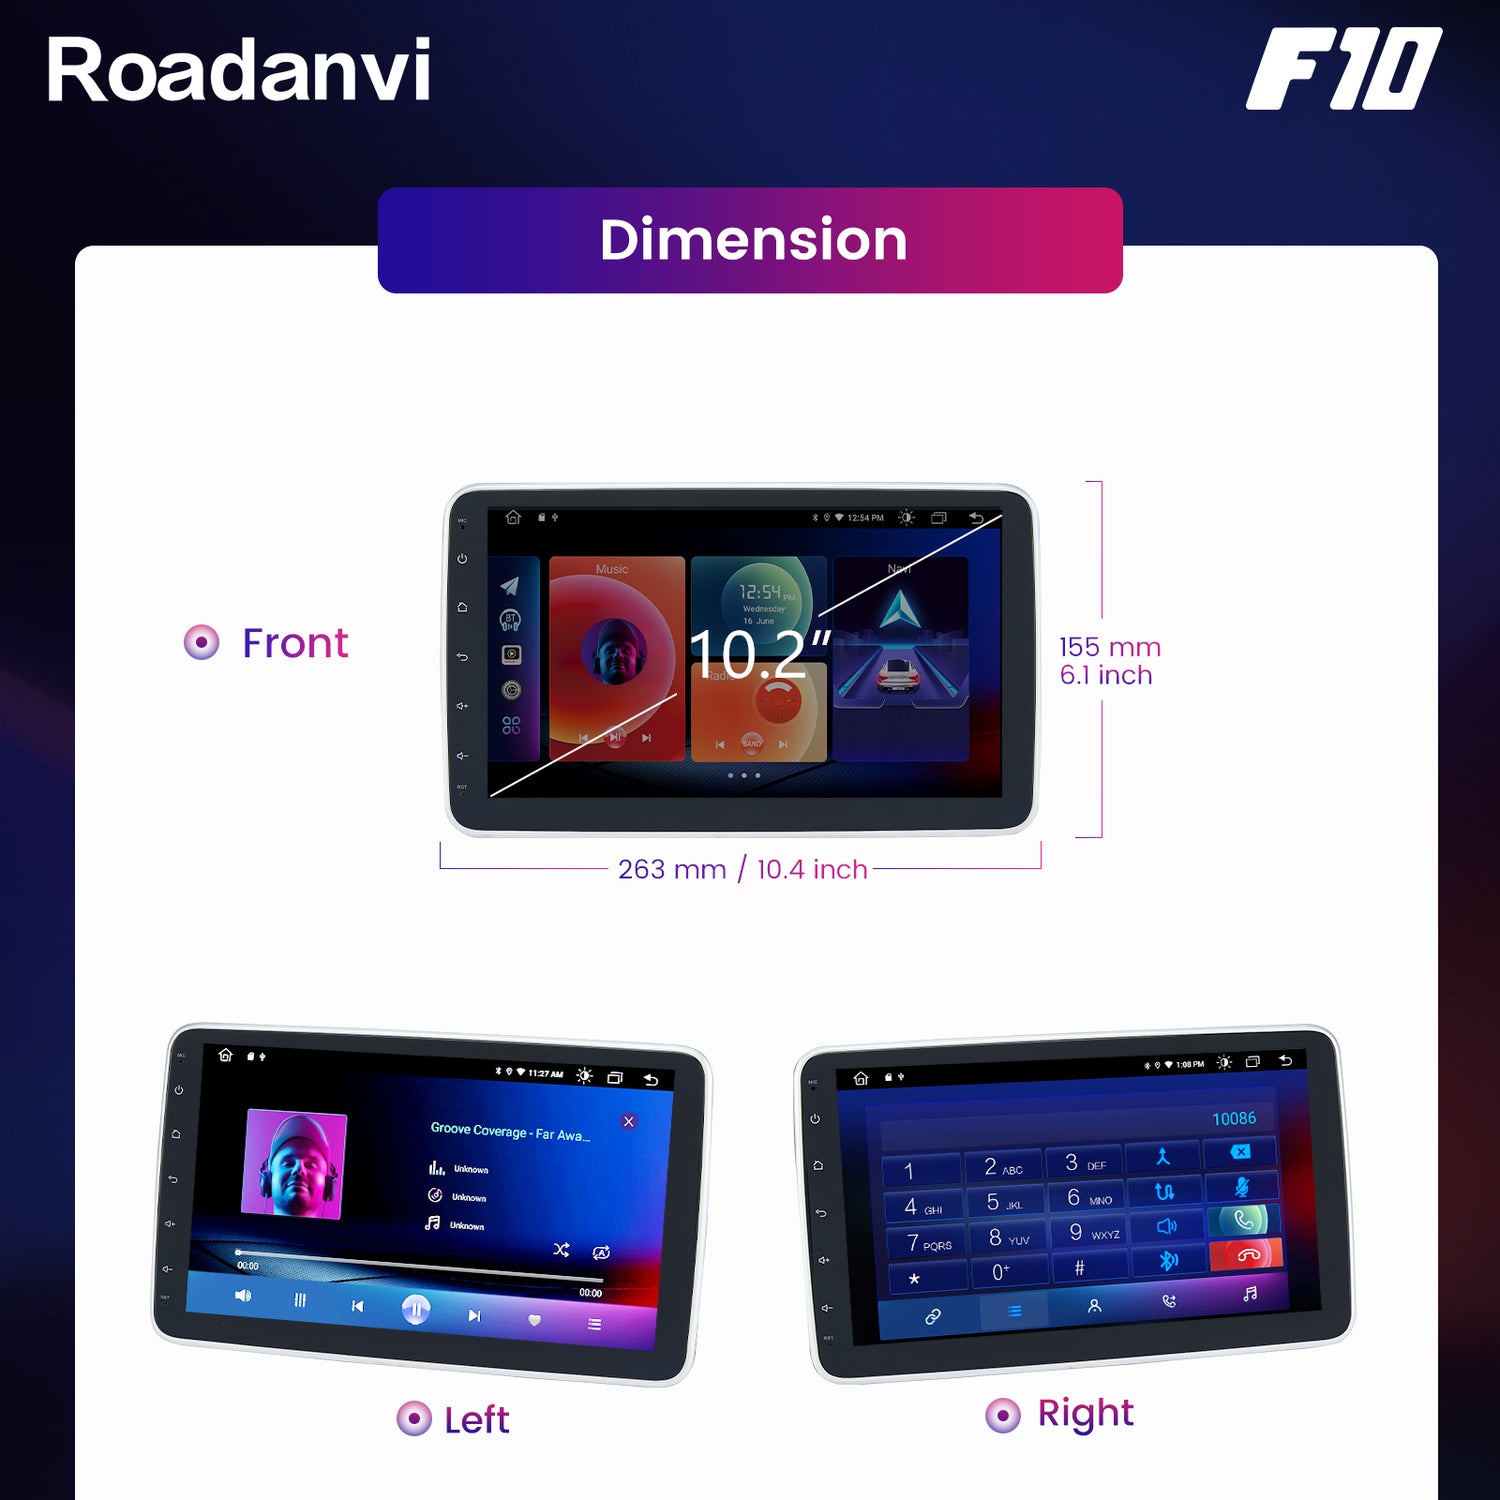 Roadanvi F10 For Single Din Universal Car Radio 10.2 inch Android Auto